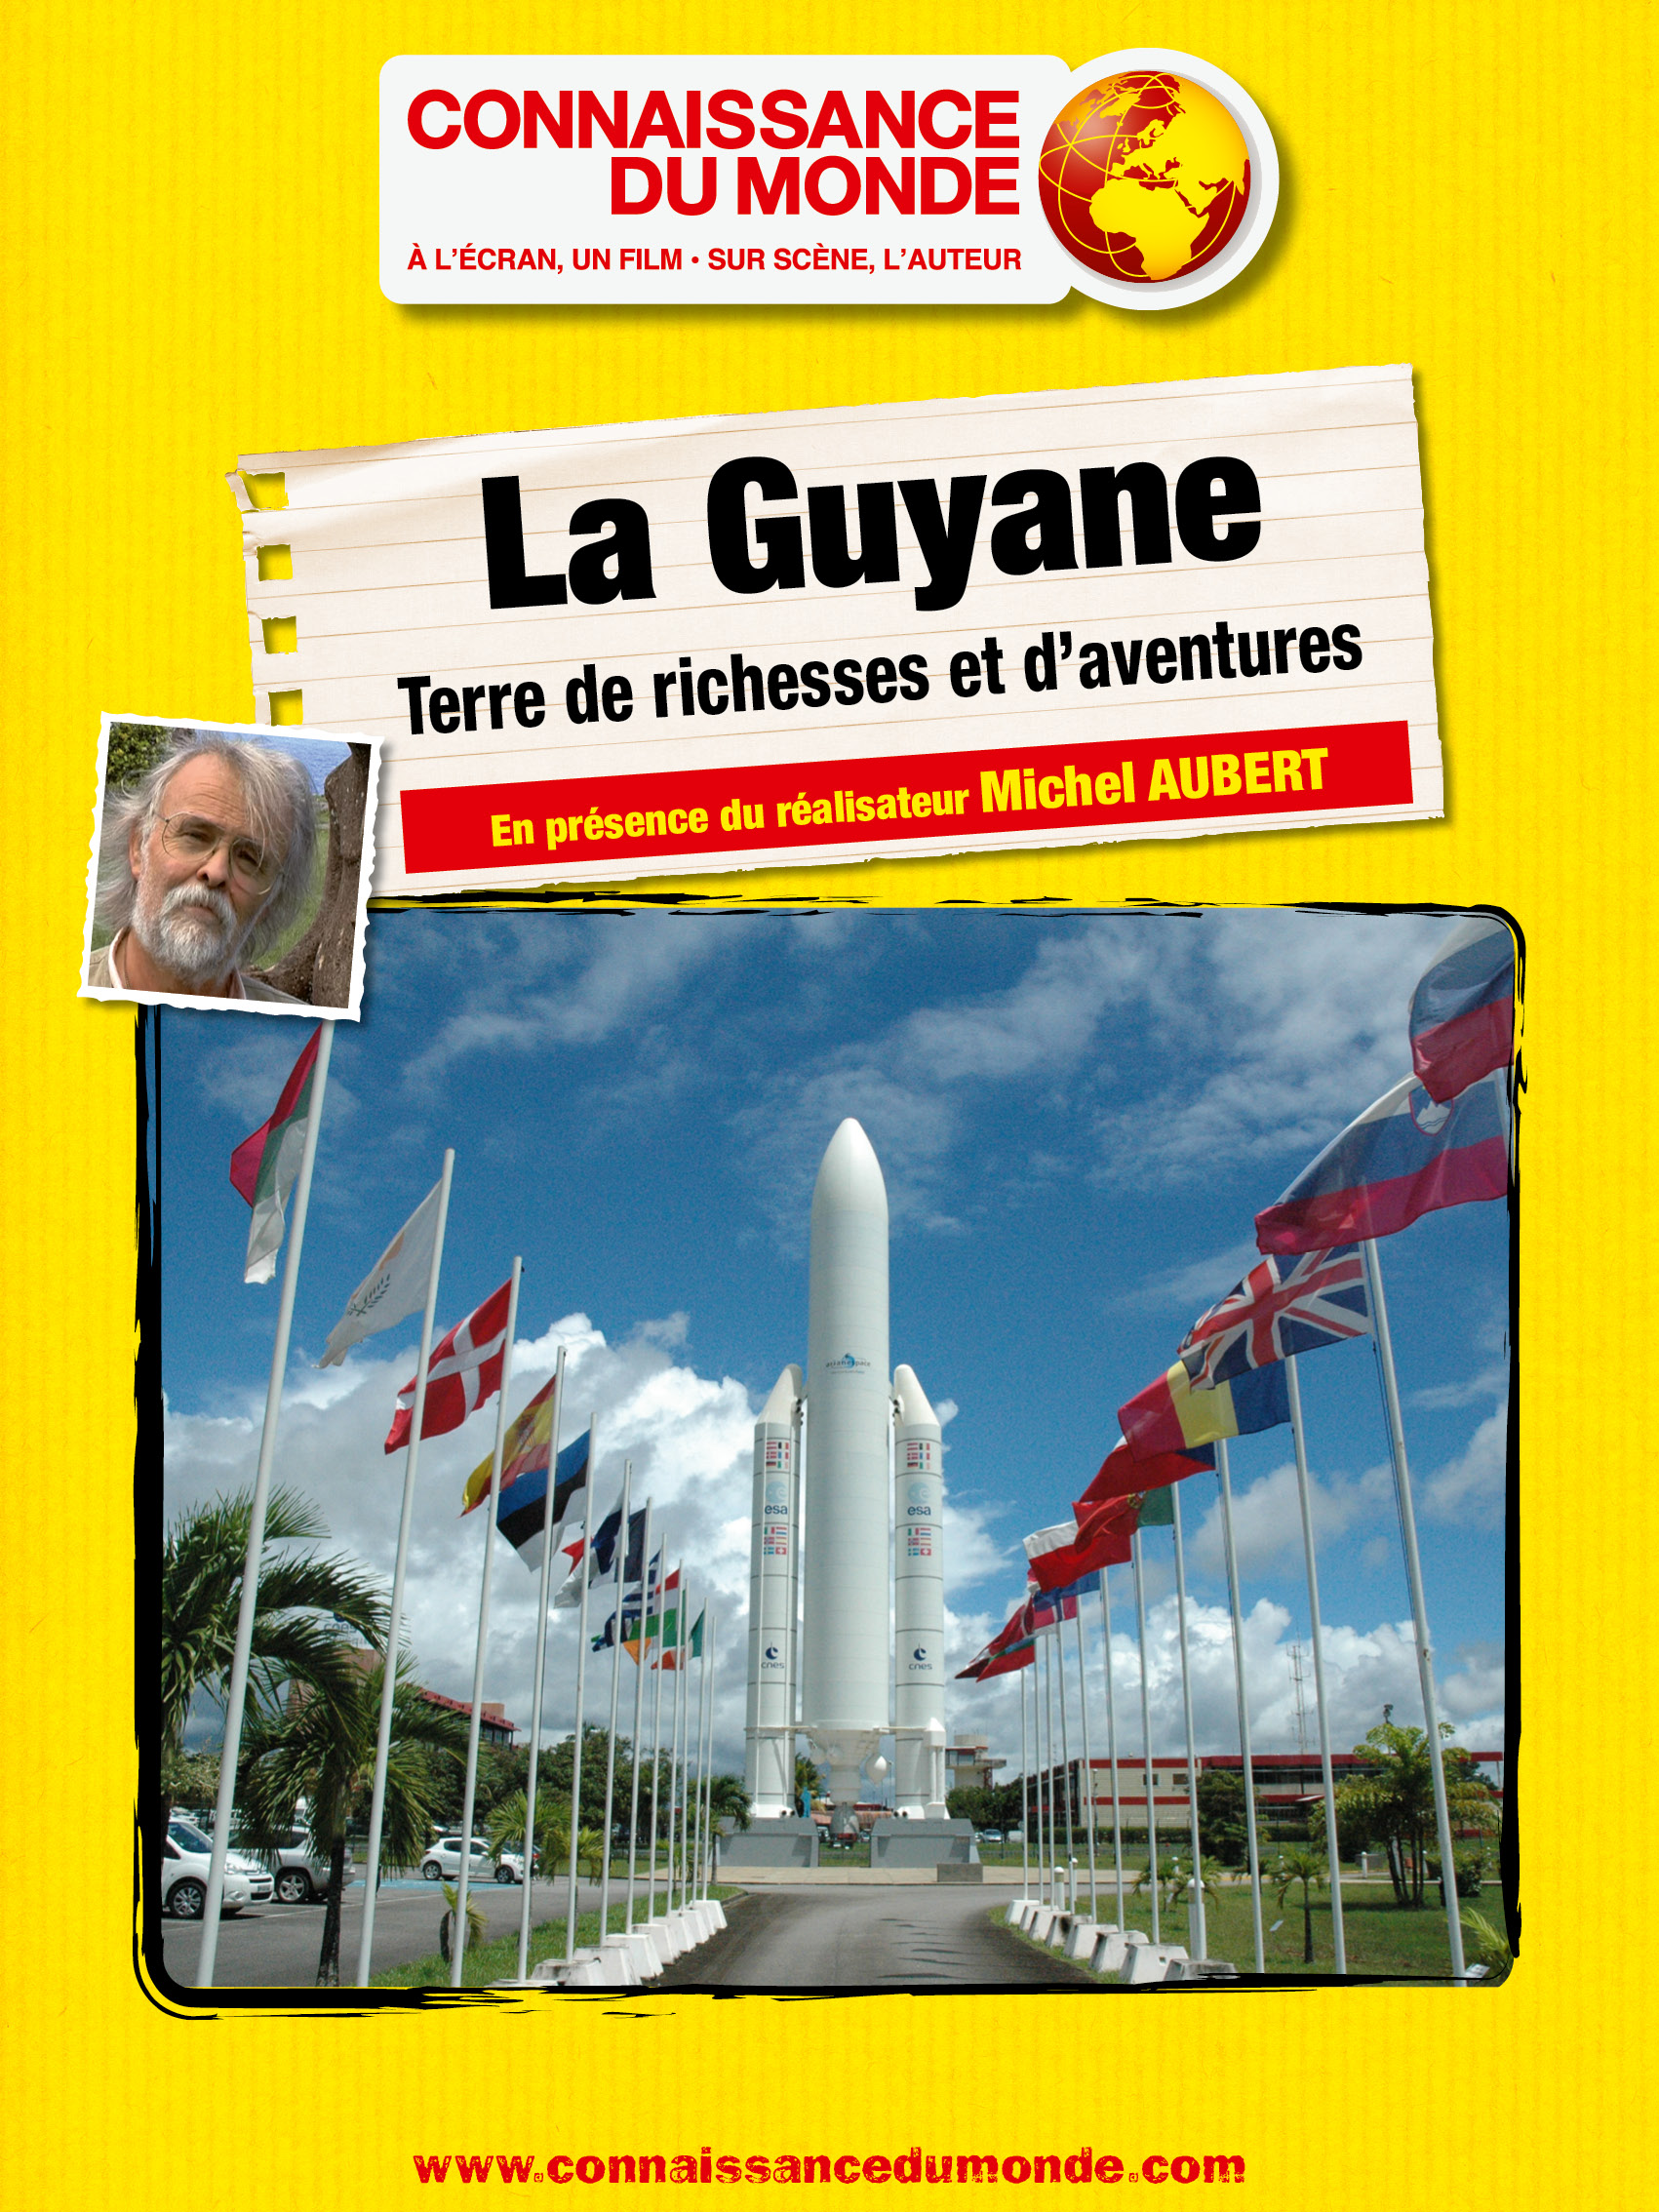 La Guyane, Terre de richesses et d'aventures